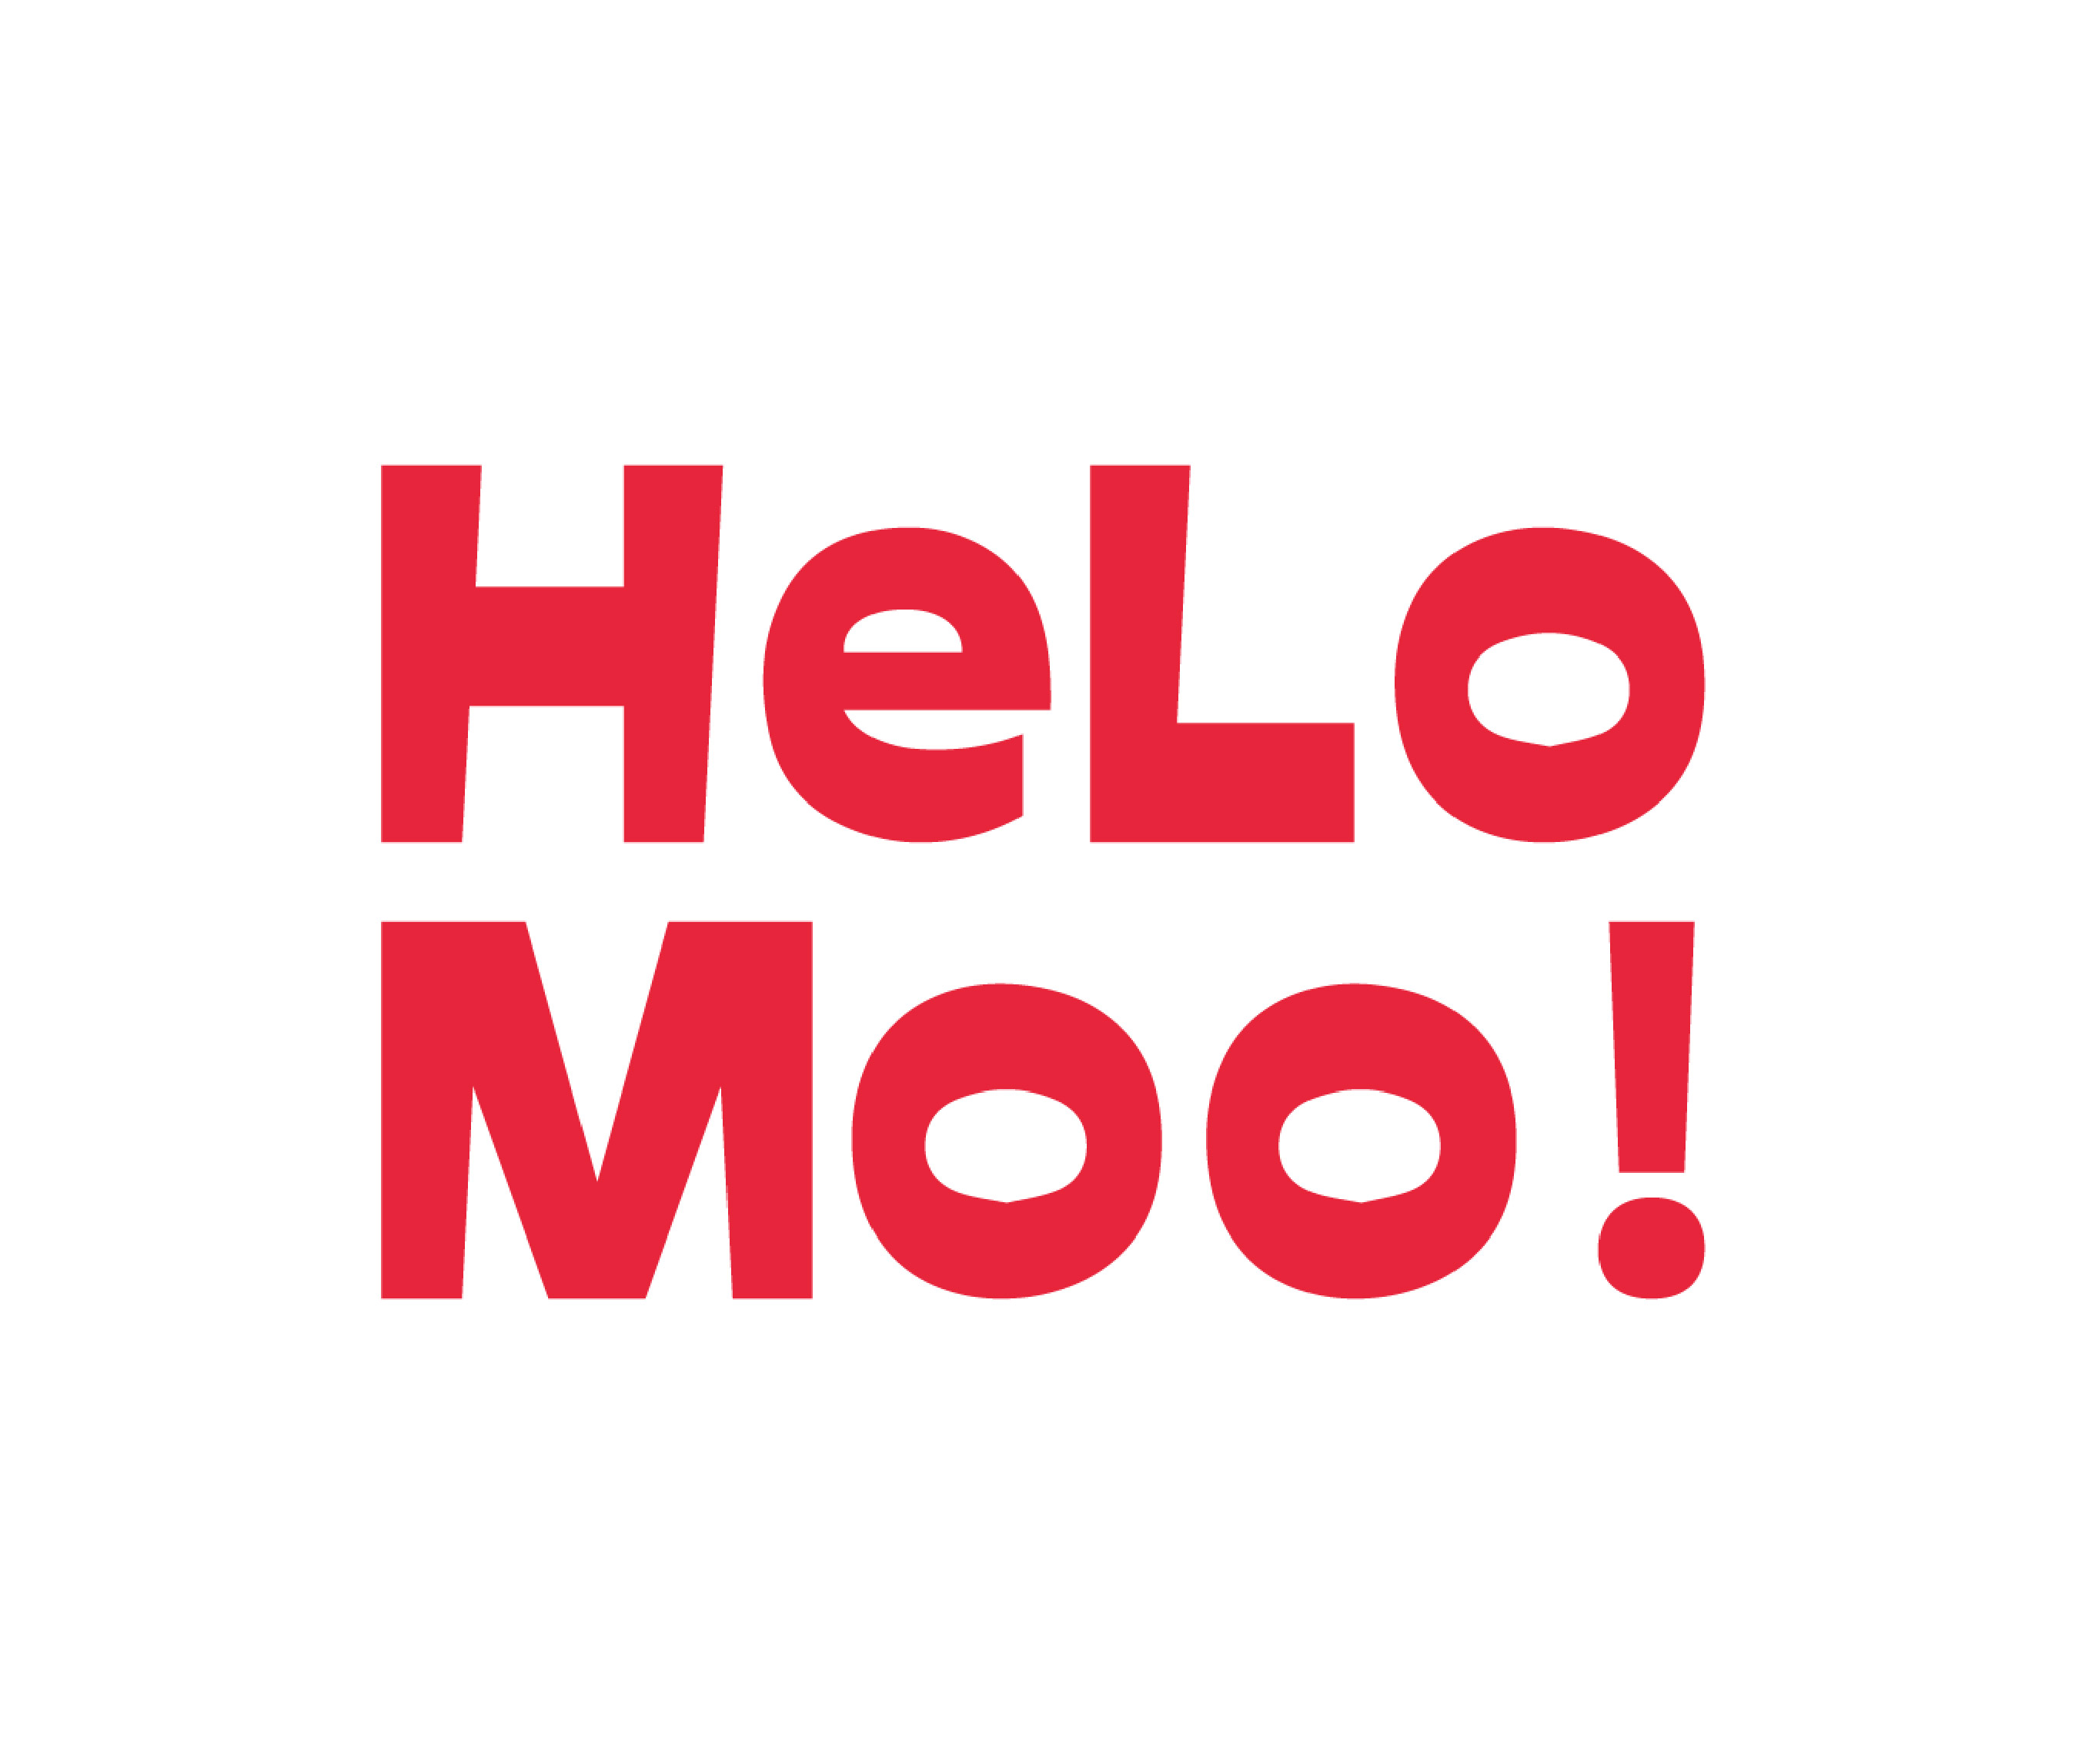 HeLo Moo!